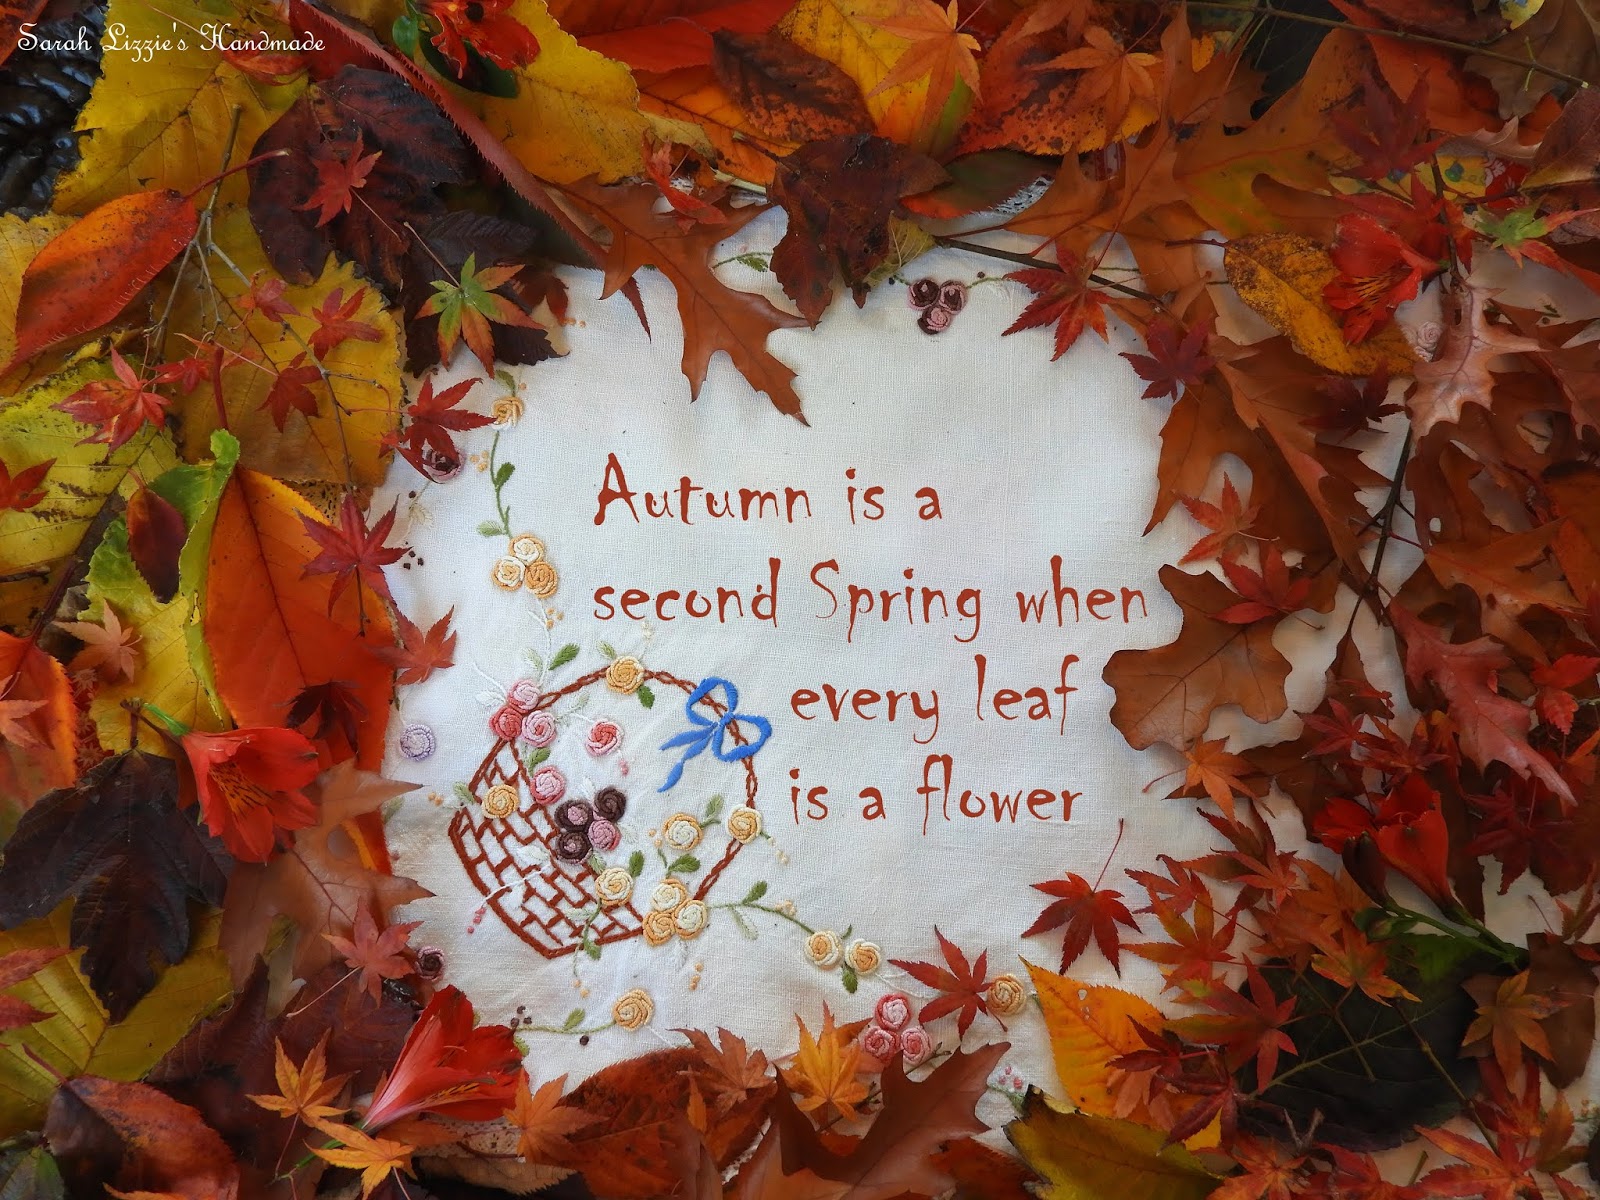 Sarah Lizzies: Splendorous Autumn!